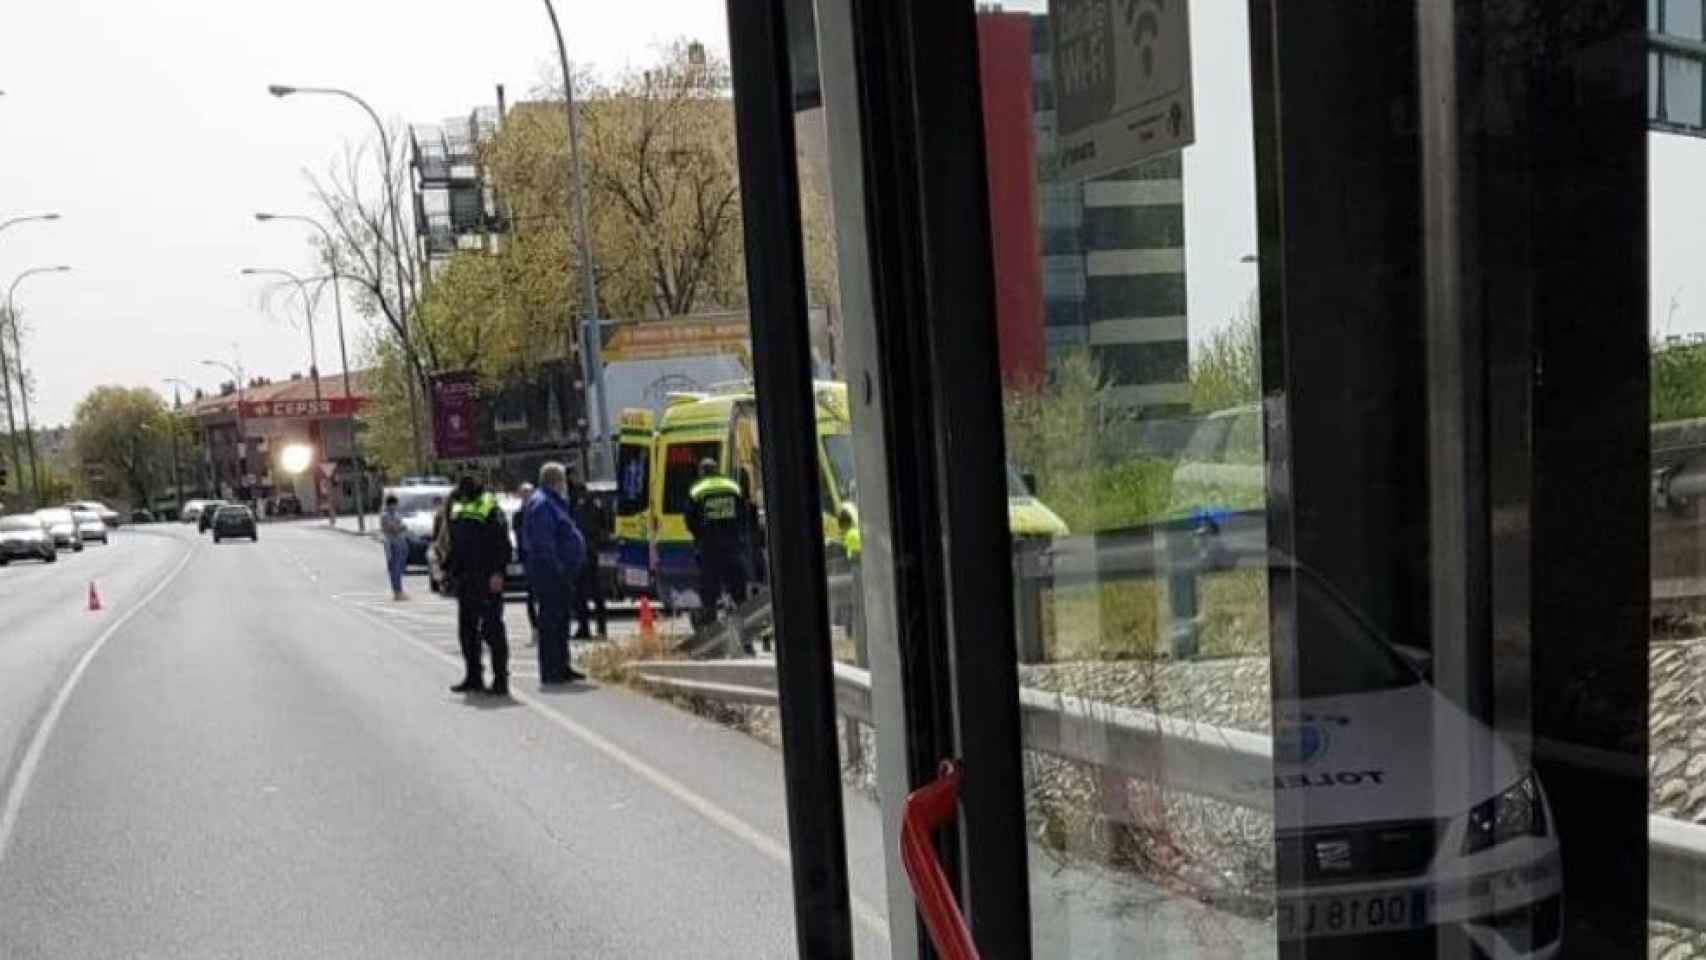 Imagen tomada desde un autobús urbano en el lugar en el que ha ocurrido el accidente